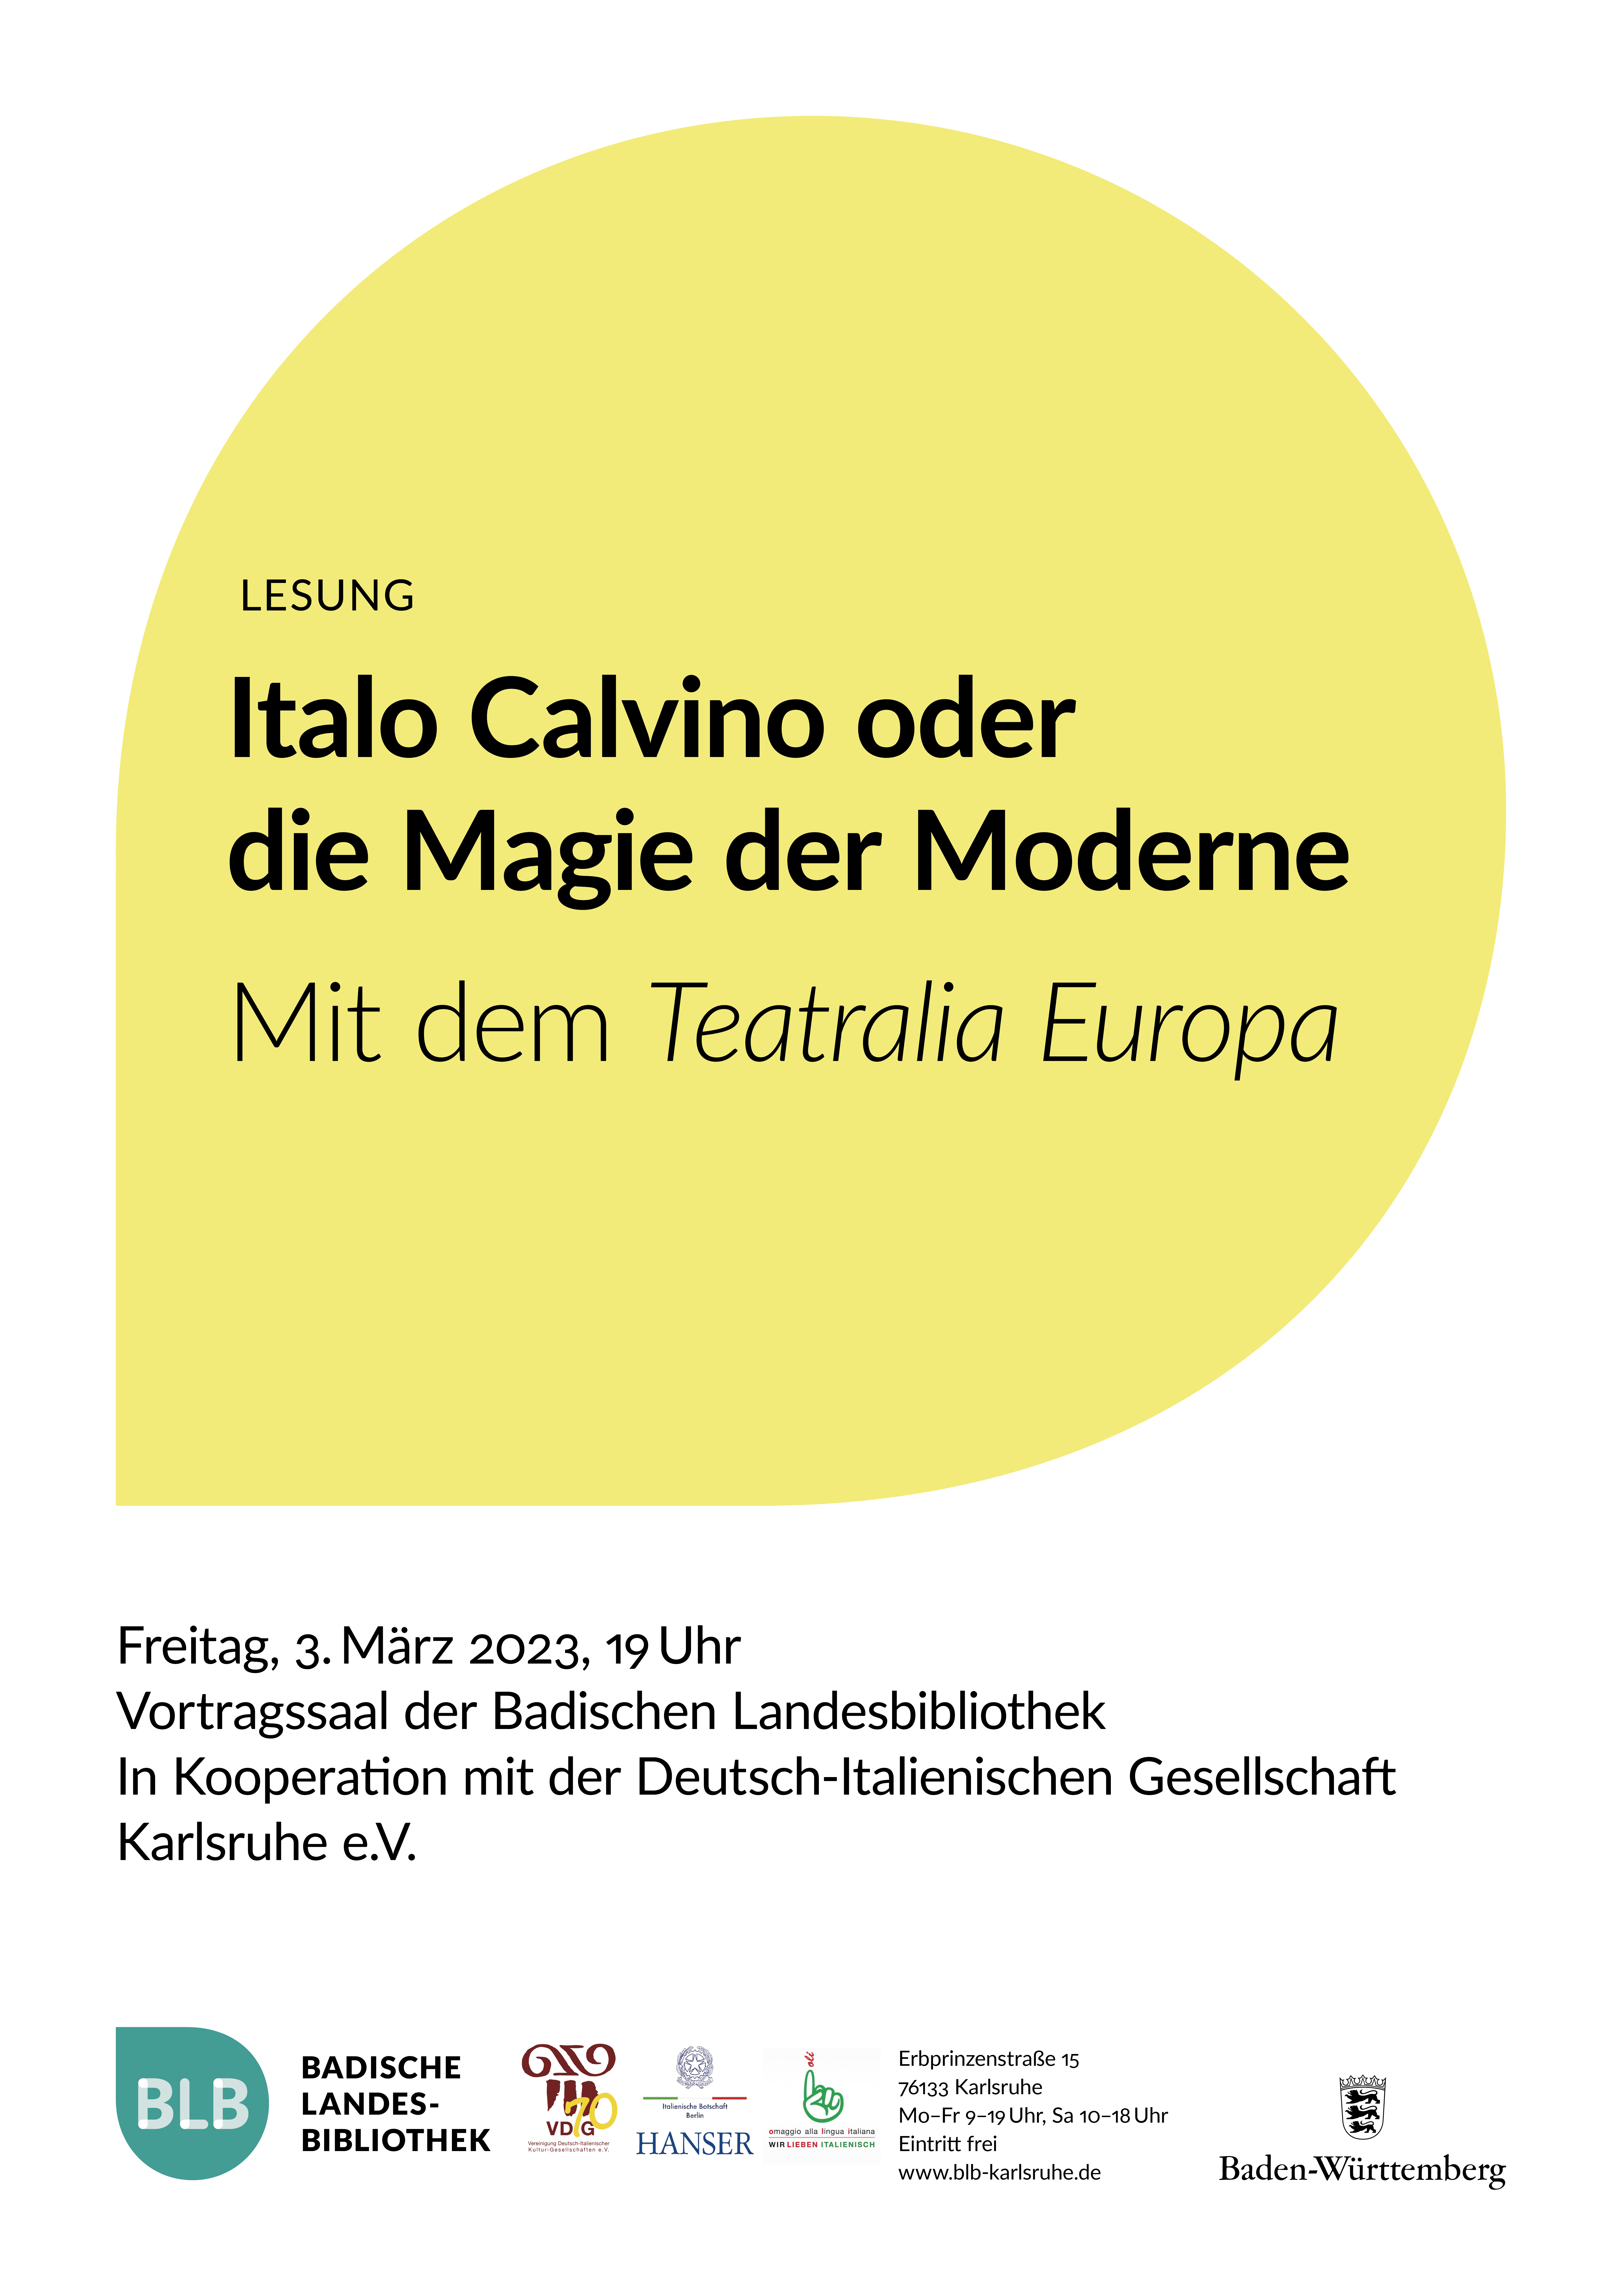 Zu sehen ist ein gelbes Monogon mit der Aufschrift: "Italo Calvino oder die Magie der Moderne." Die Lesung findet mit dem Teatralia Europa am Freitag, den 3. März 2023 um 19 Uhr im Vortragssaal der Badischen Landesbibliothek Karlsruhe statt. 